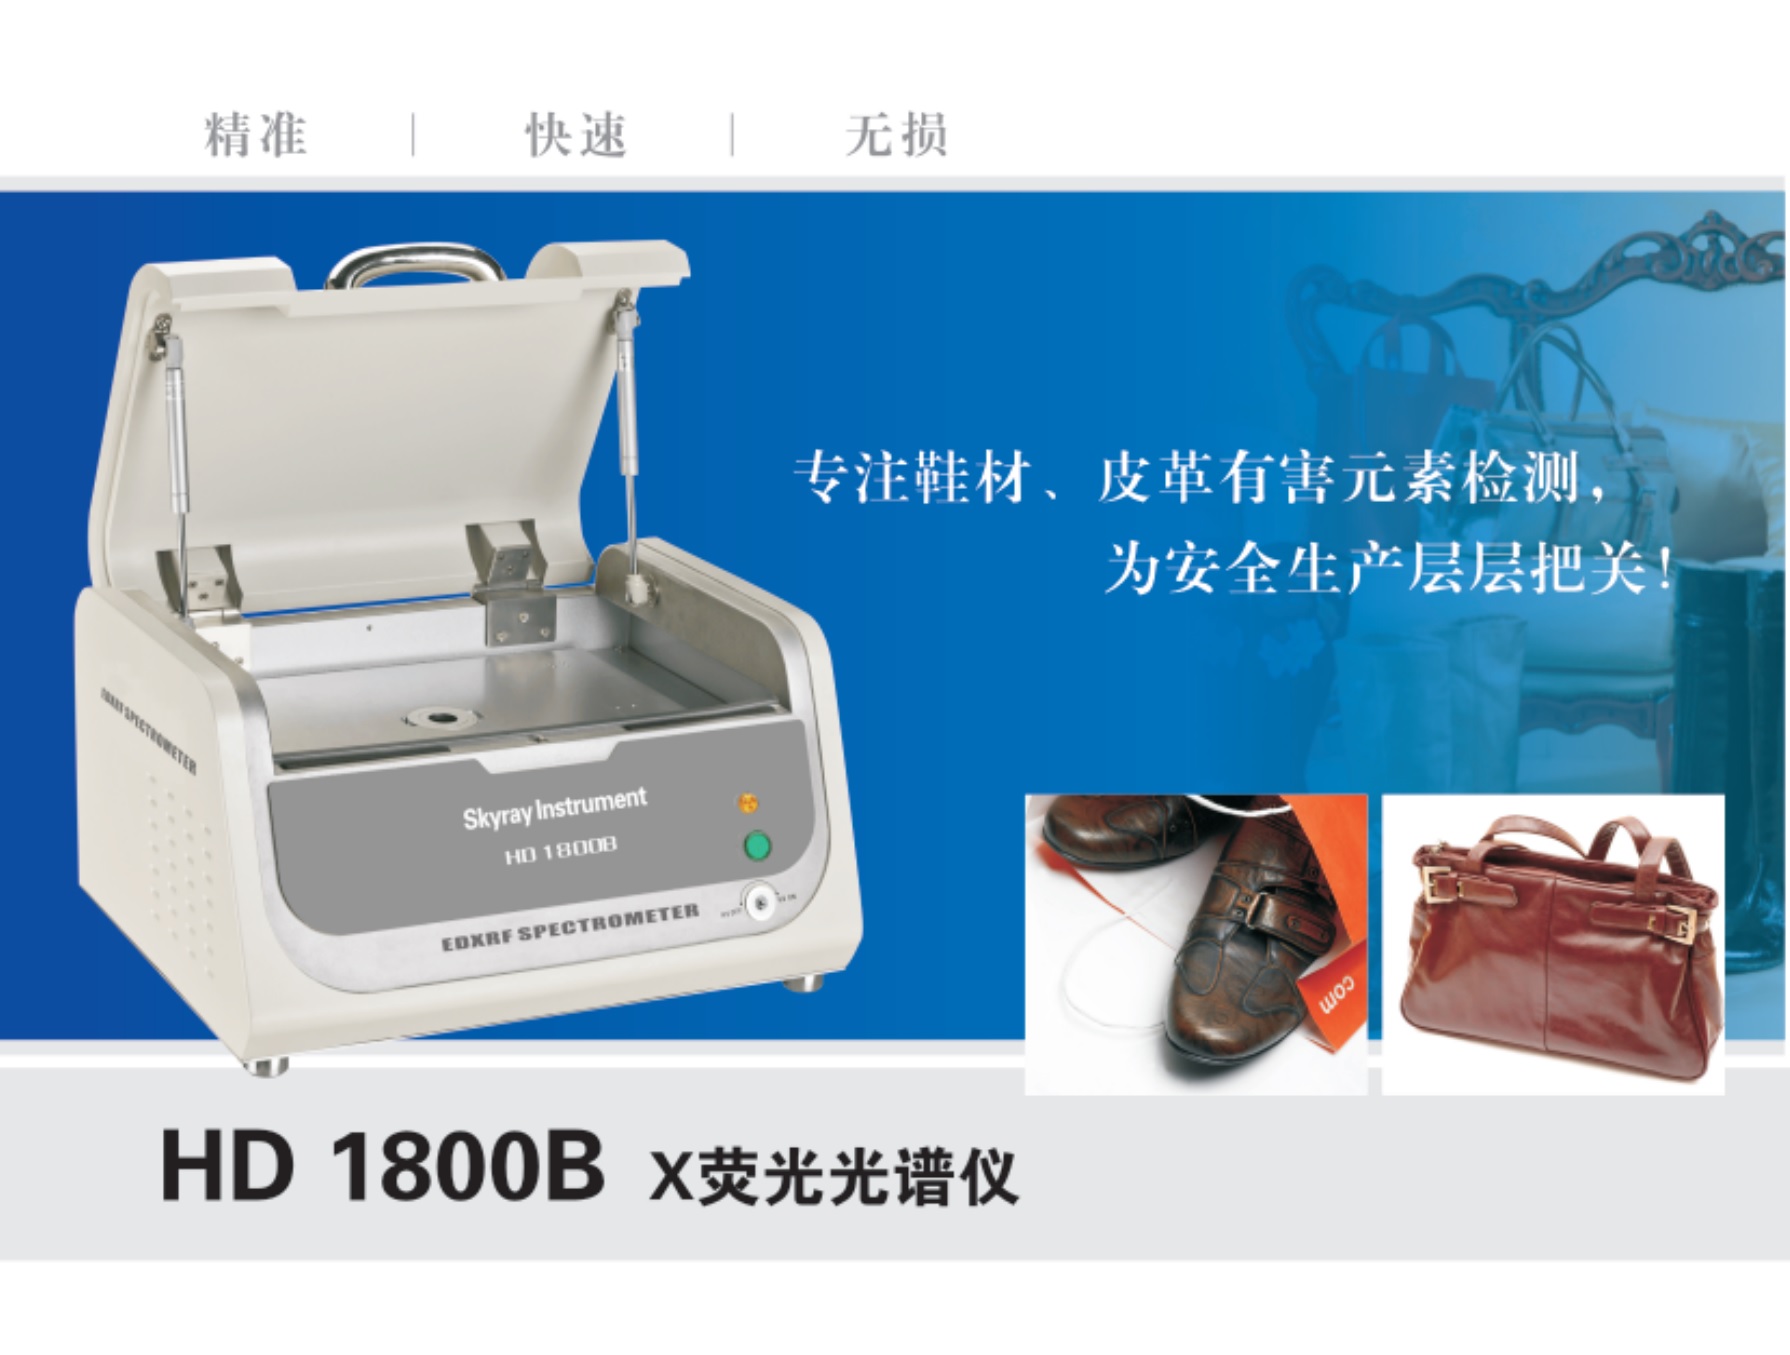 江苏天瑞仪器股份有限公司-天瑞仪器 HD 1800